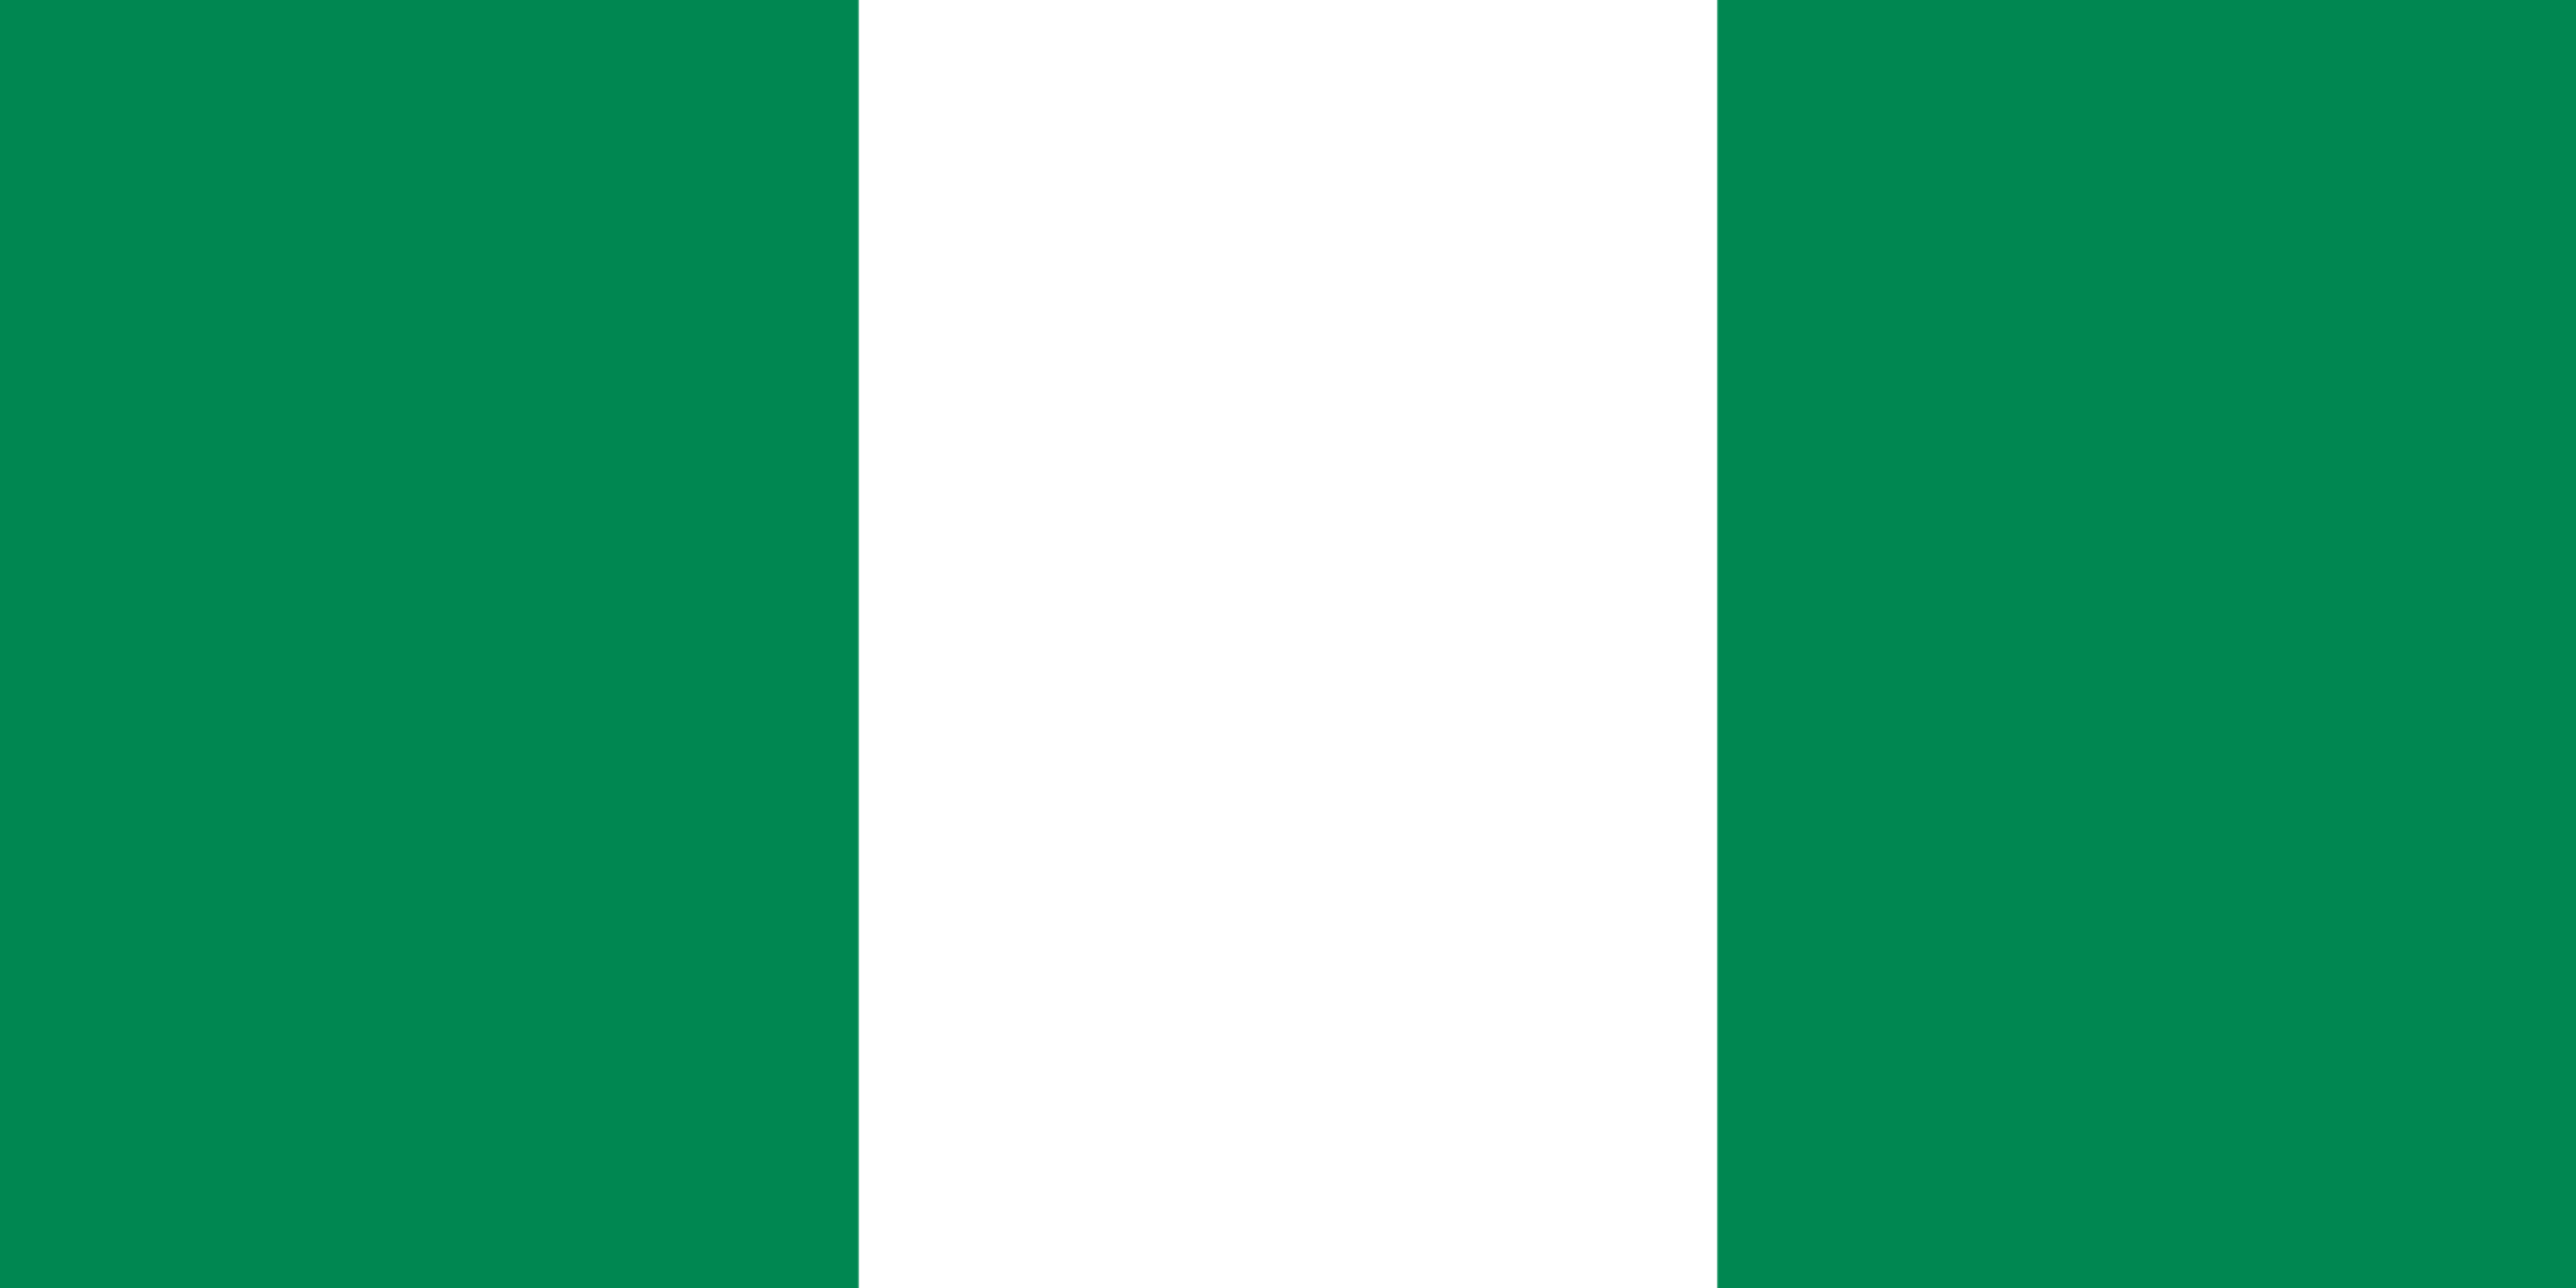 nigeria flag plantilla imagen principal